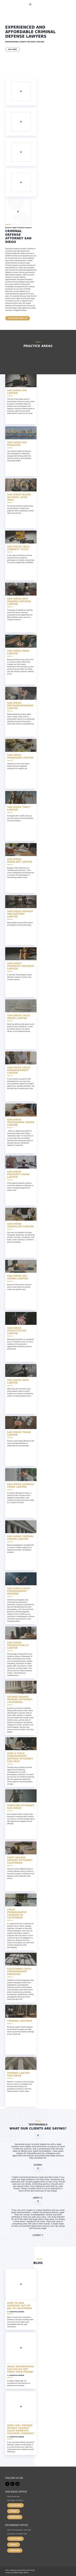 Sevens Legal APC - San Diego CA Lawyers